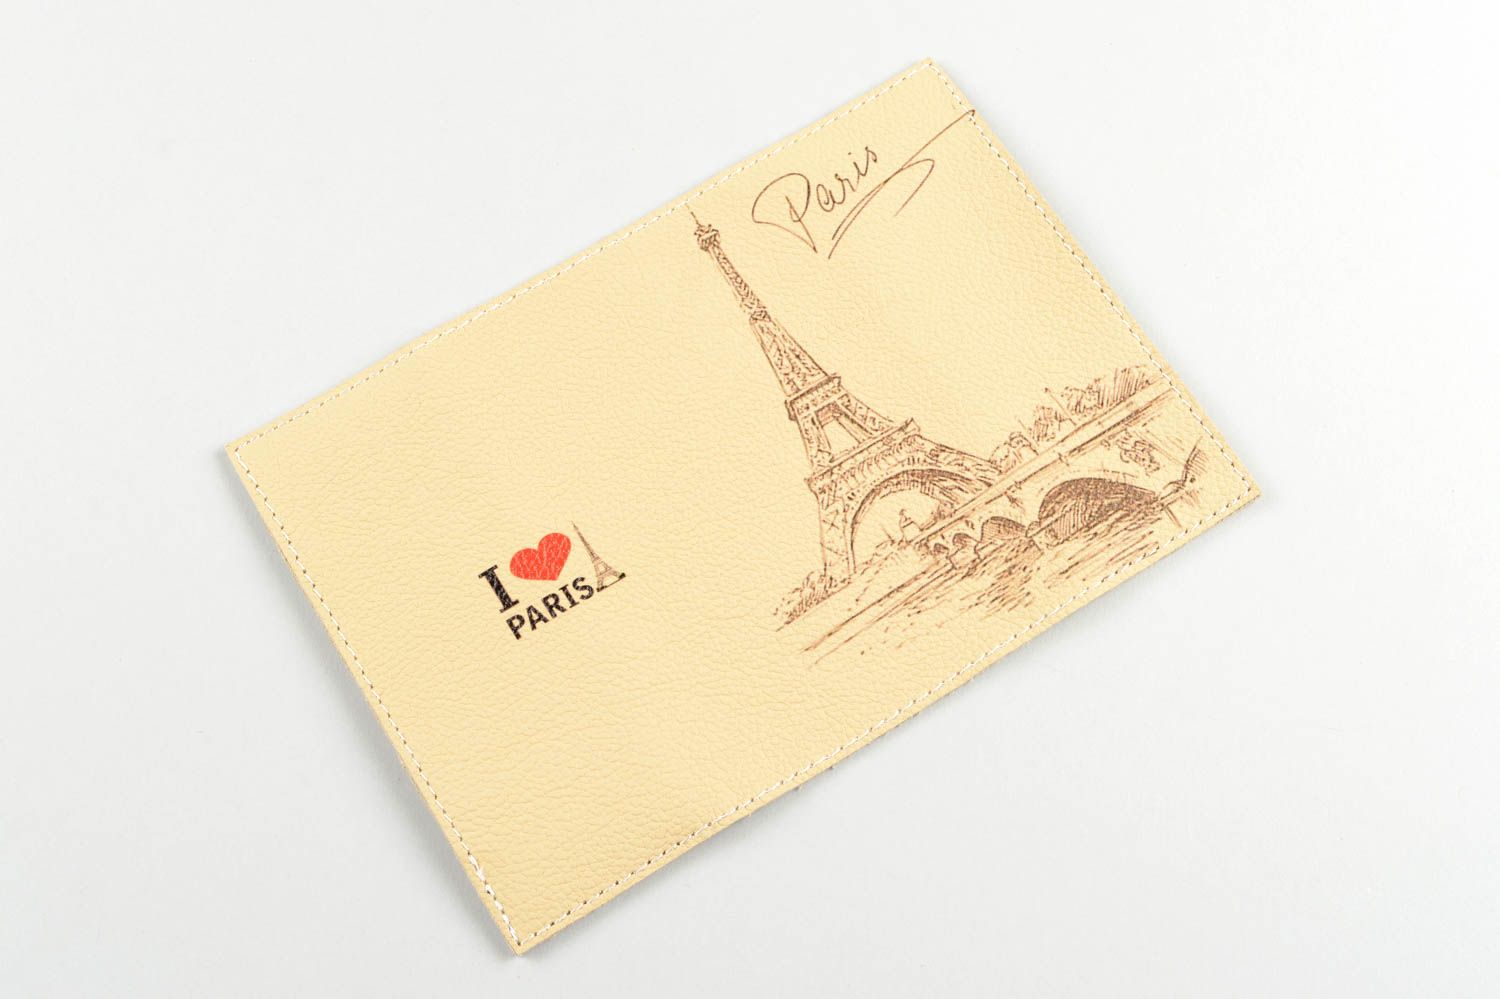 Protège-passeport fait main Étui à passeport en vrai cuir Cadeau insolite Paris photo 2